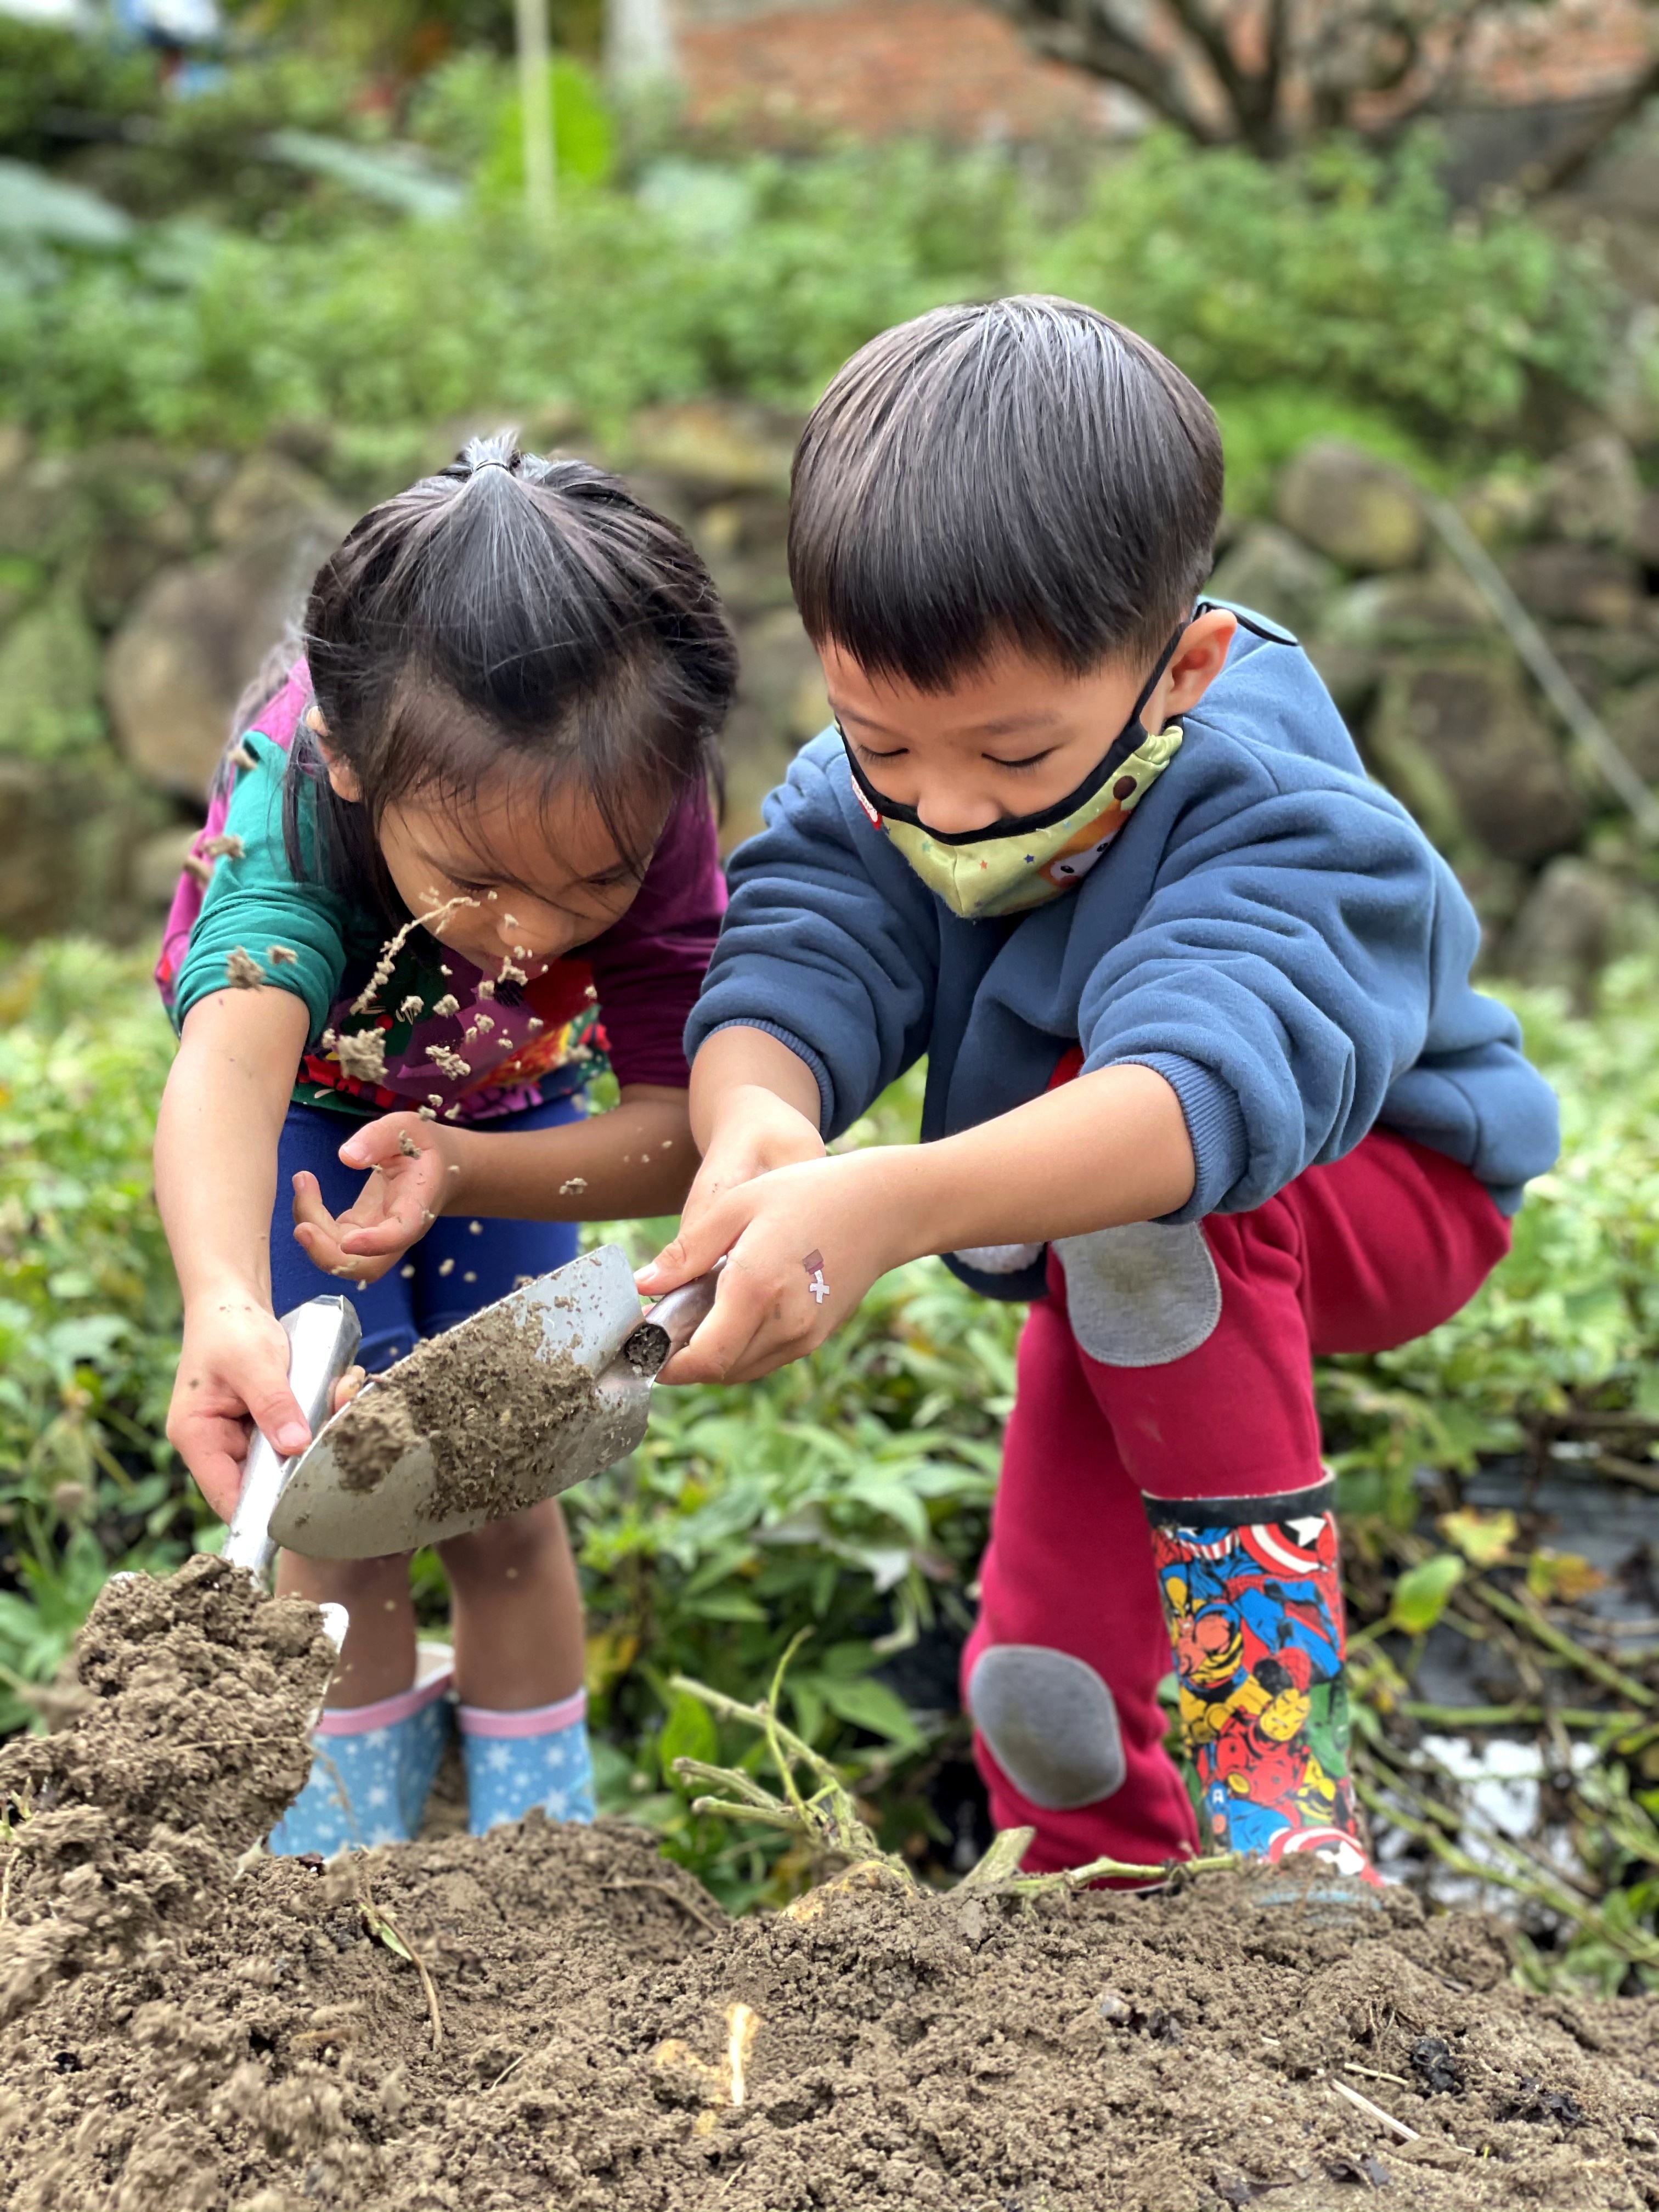 挖地瓜是小朋友最喜歡的活動項目。